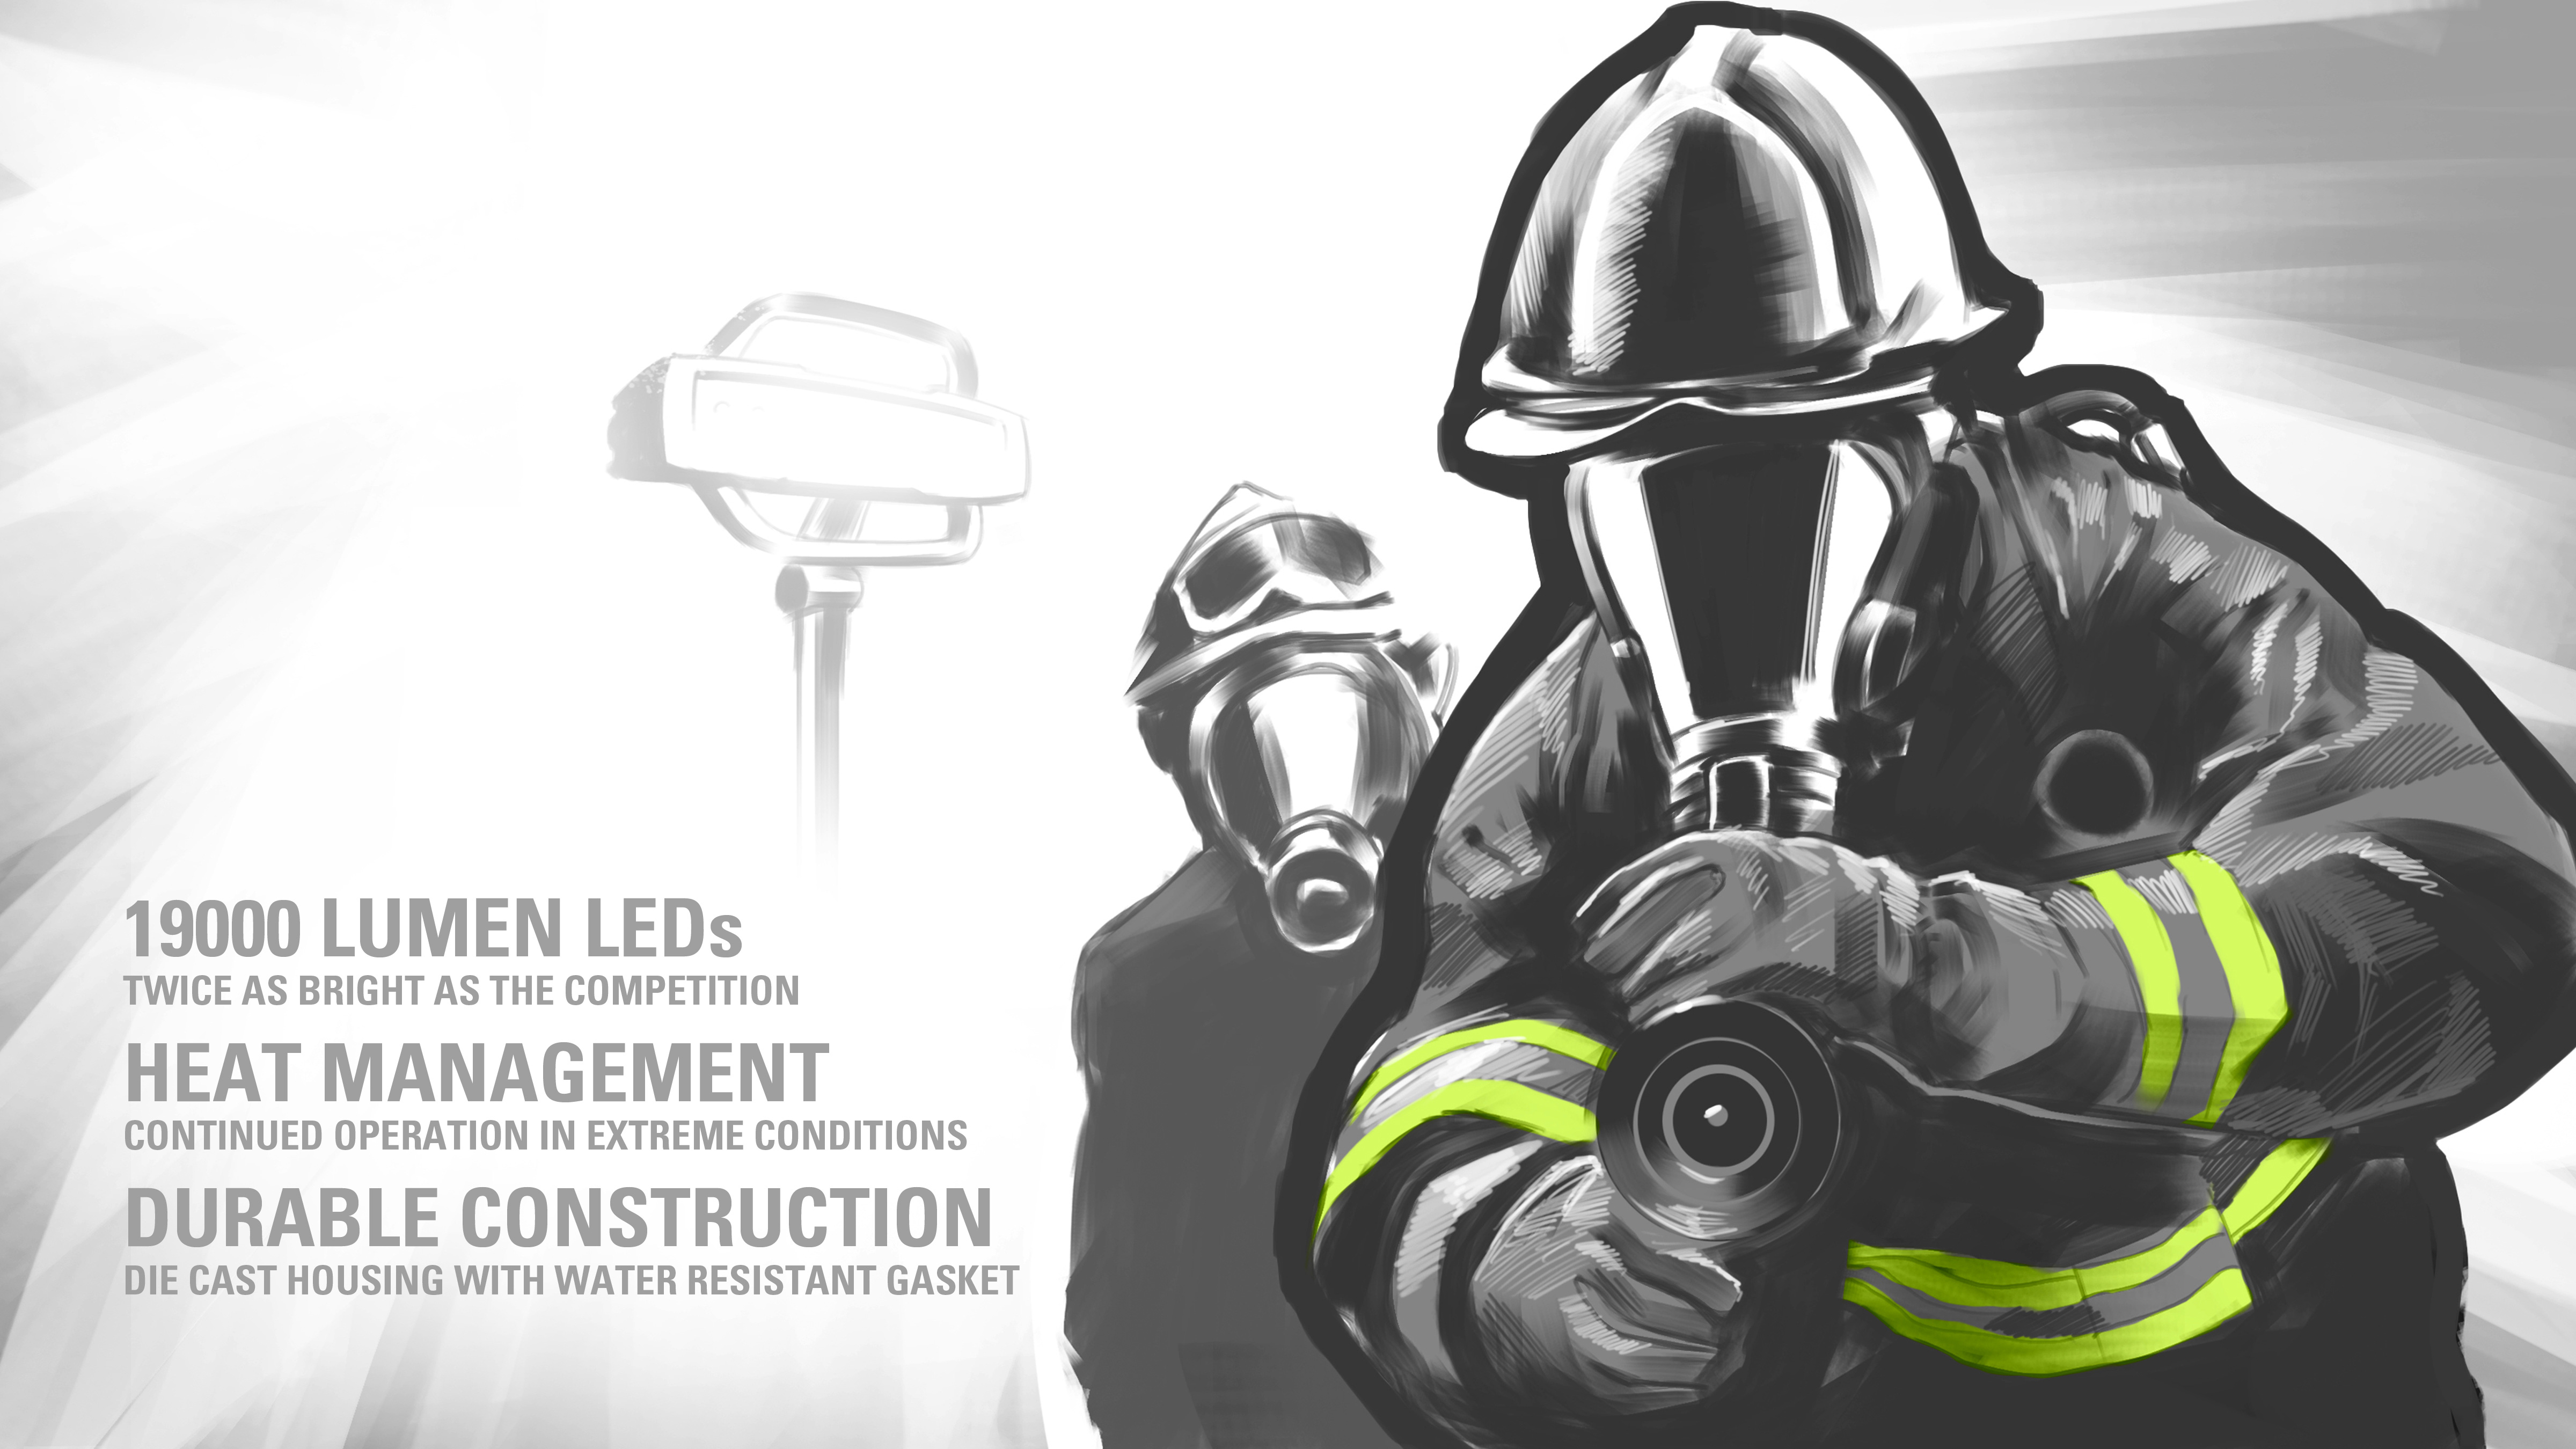 weldon emergency scene light product design 04